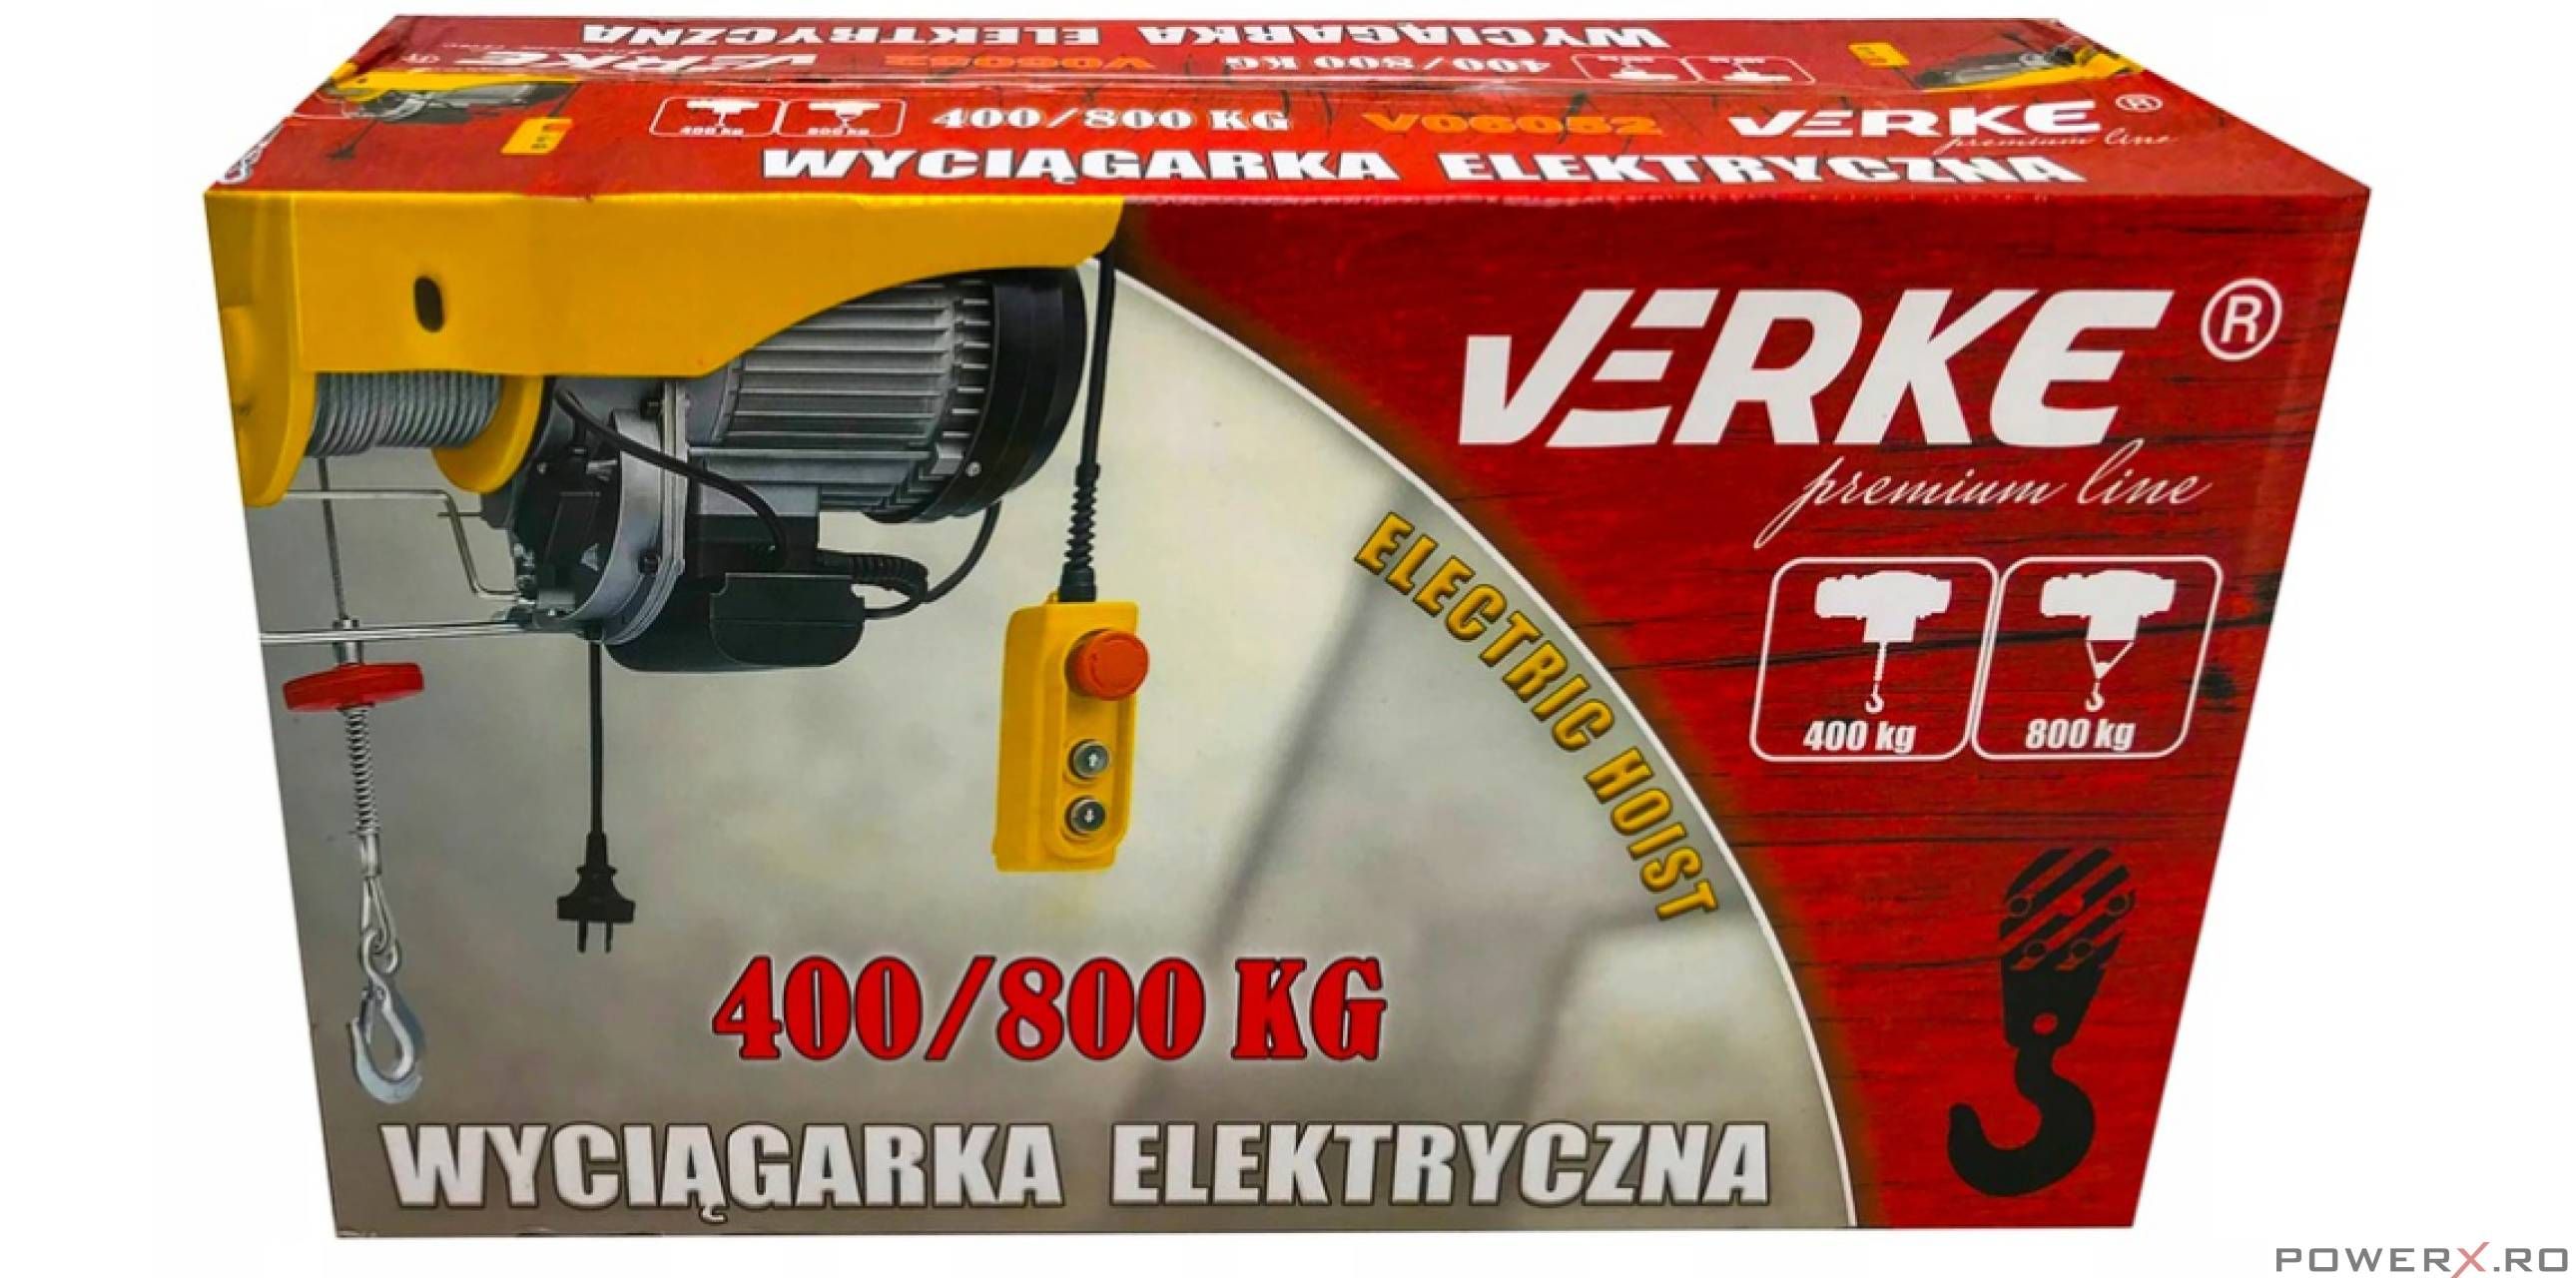 Electropalan 400 / 800 Kg, Macara Electrica, Troliu, Verke